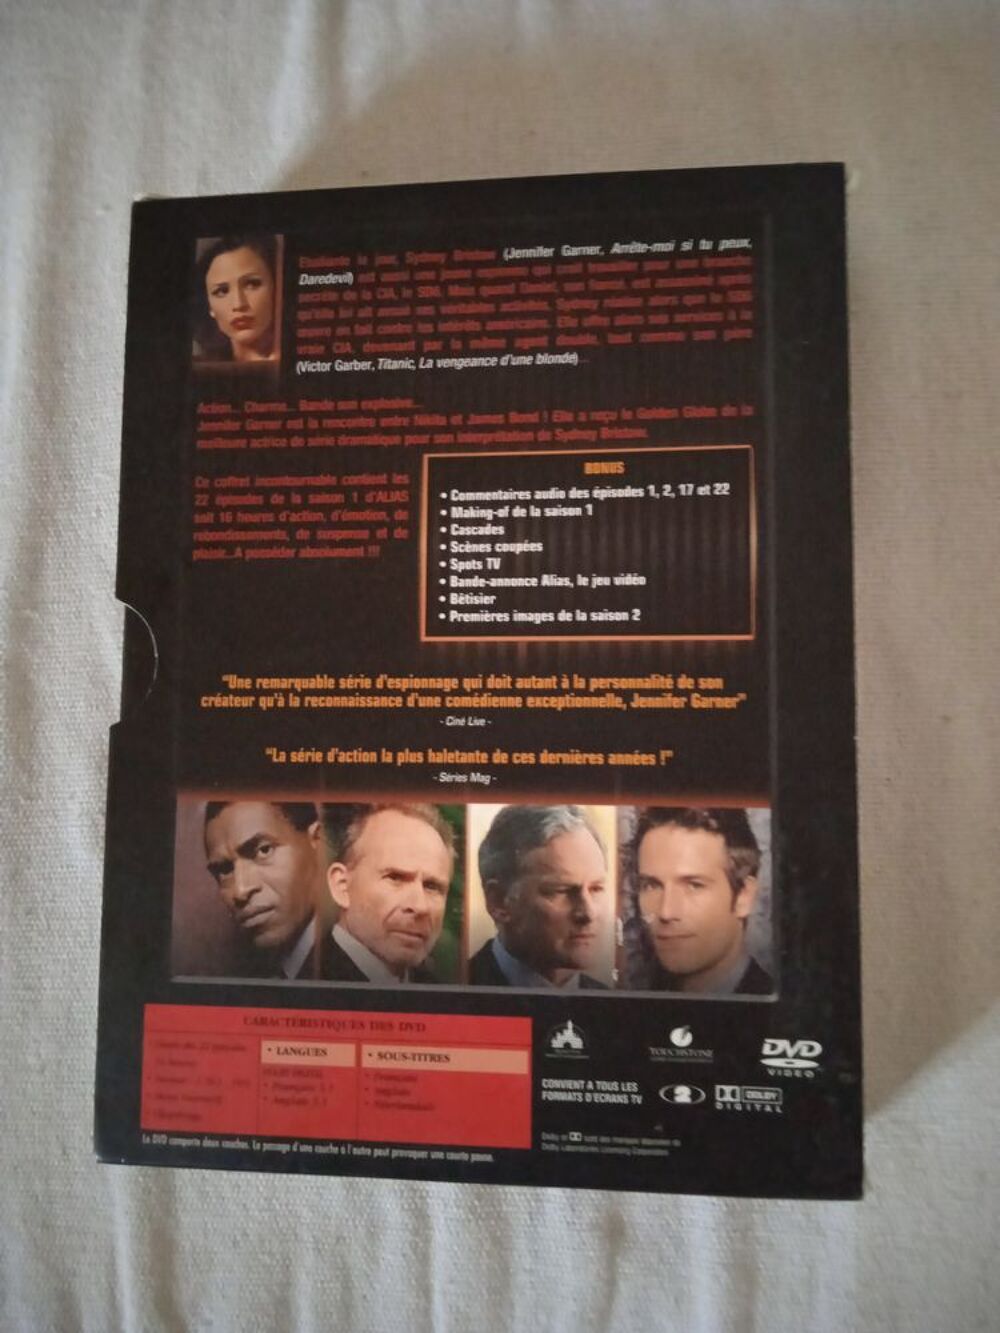 DVD Alias
Saison 1
2003
Excellent etat
Multi langue
+Bon DVD et blu-ray